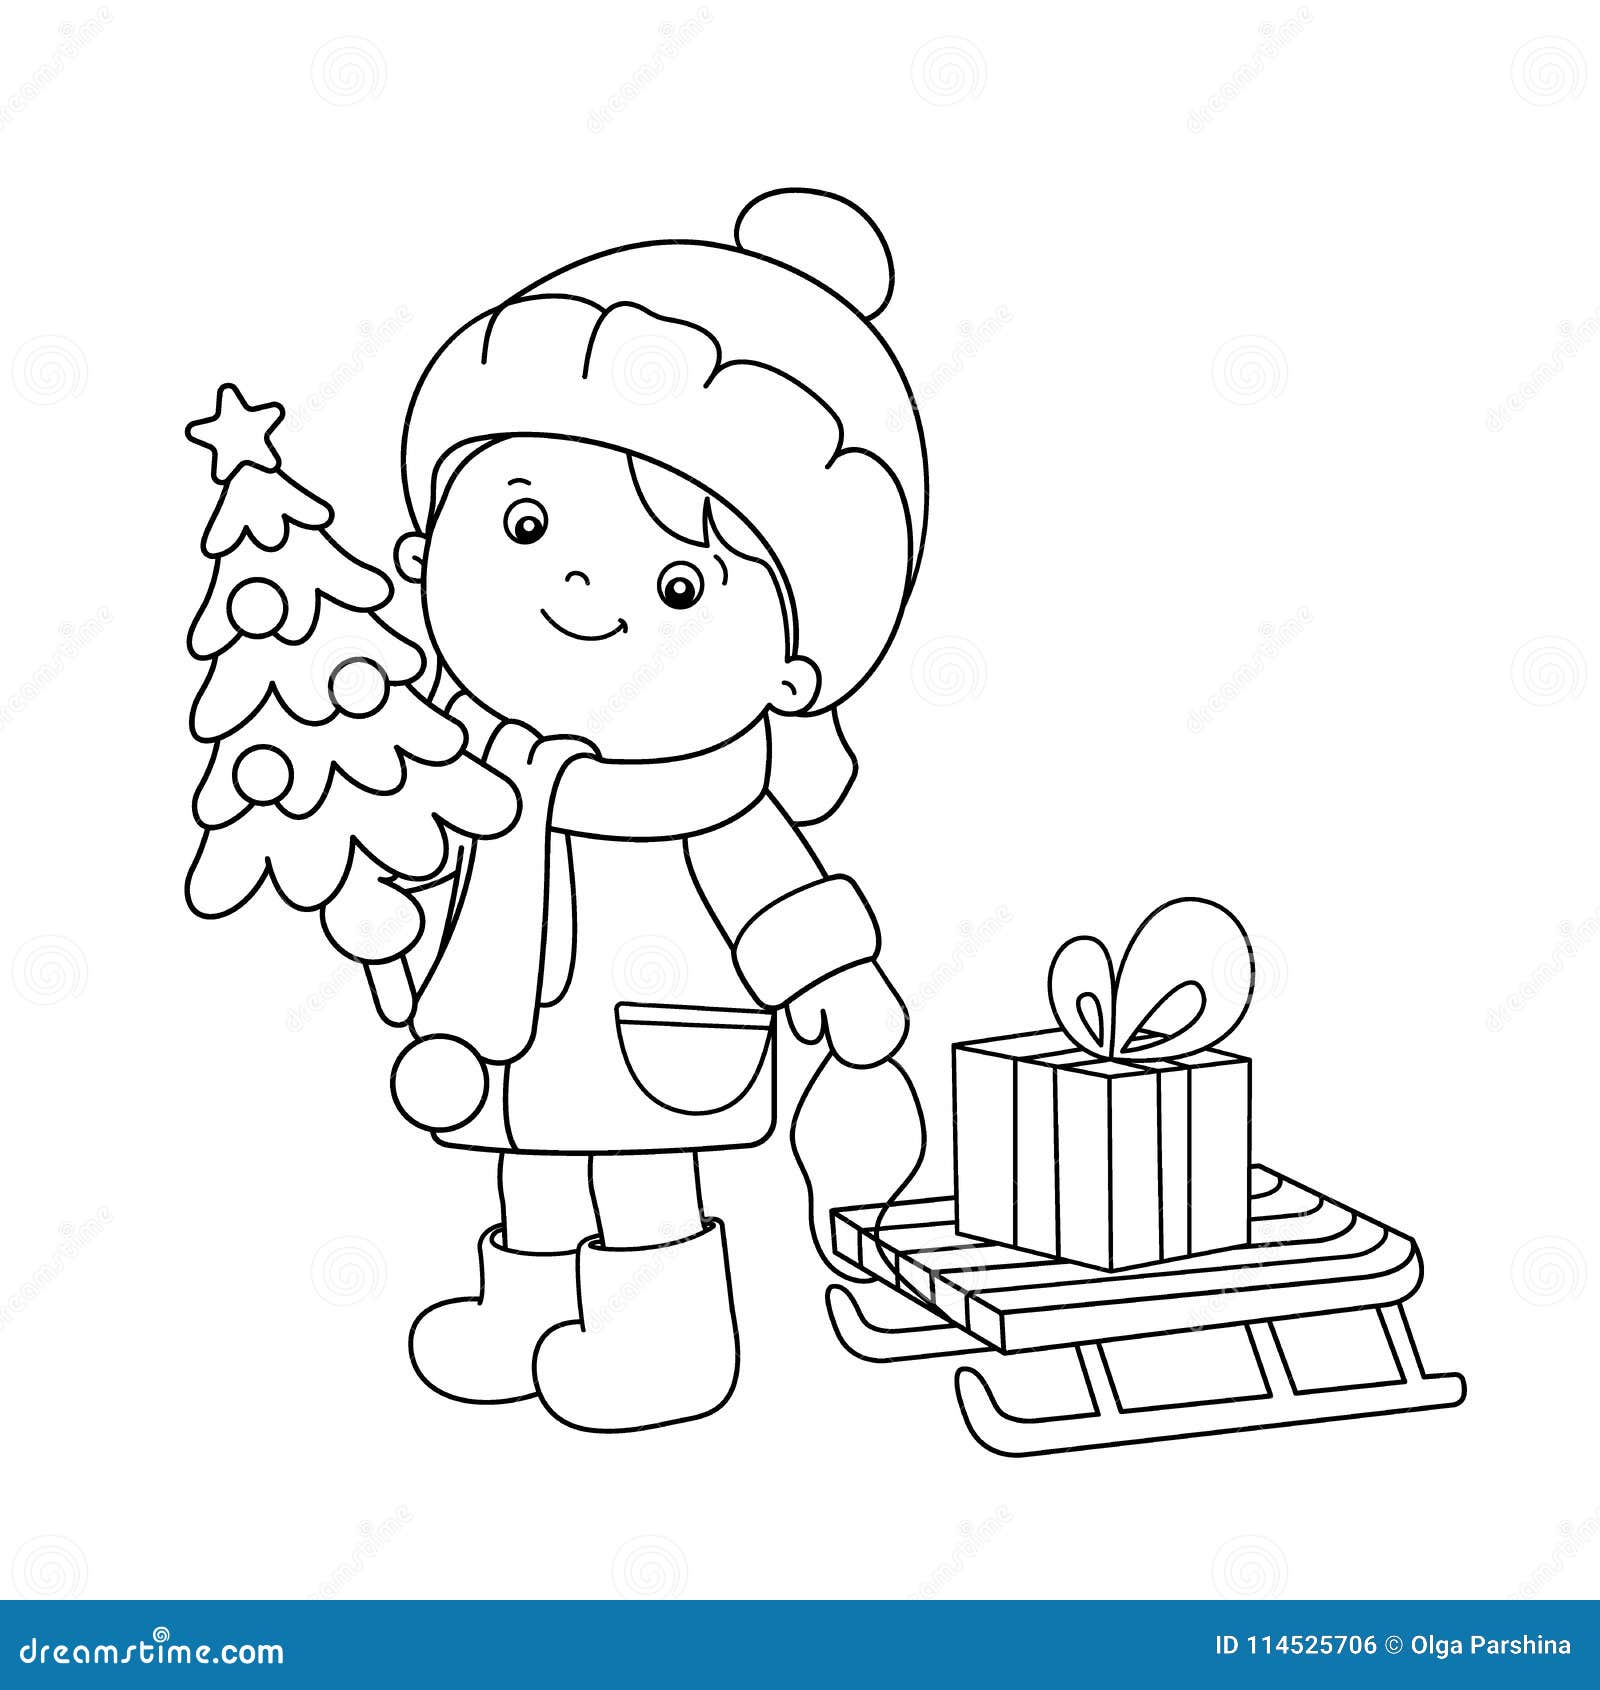 Desenho de menino de natal e árvore de natal para colorir